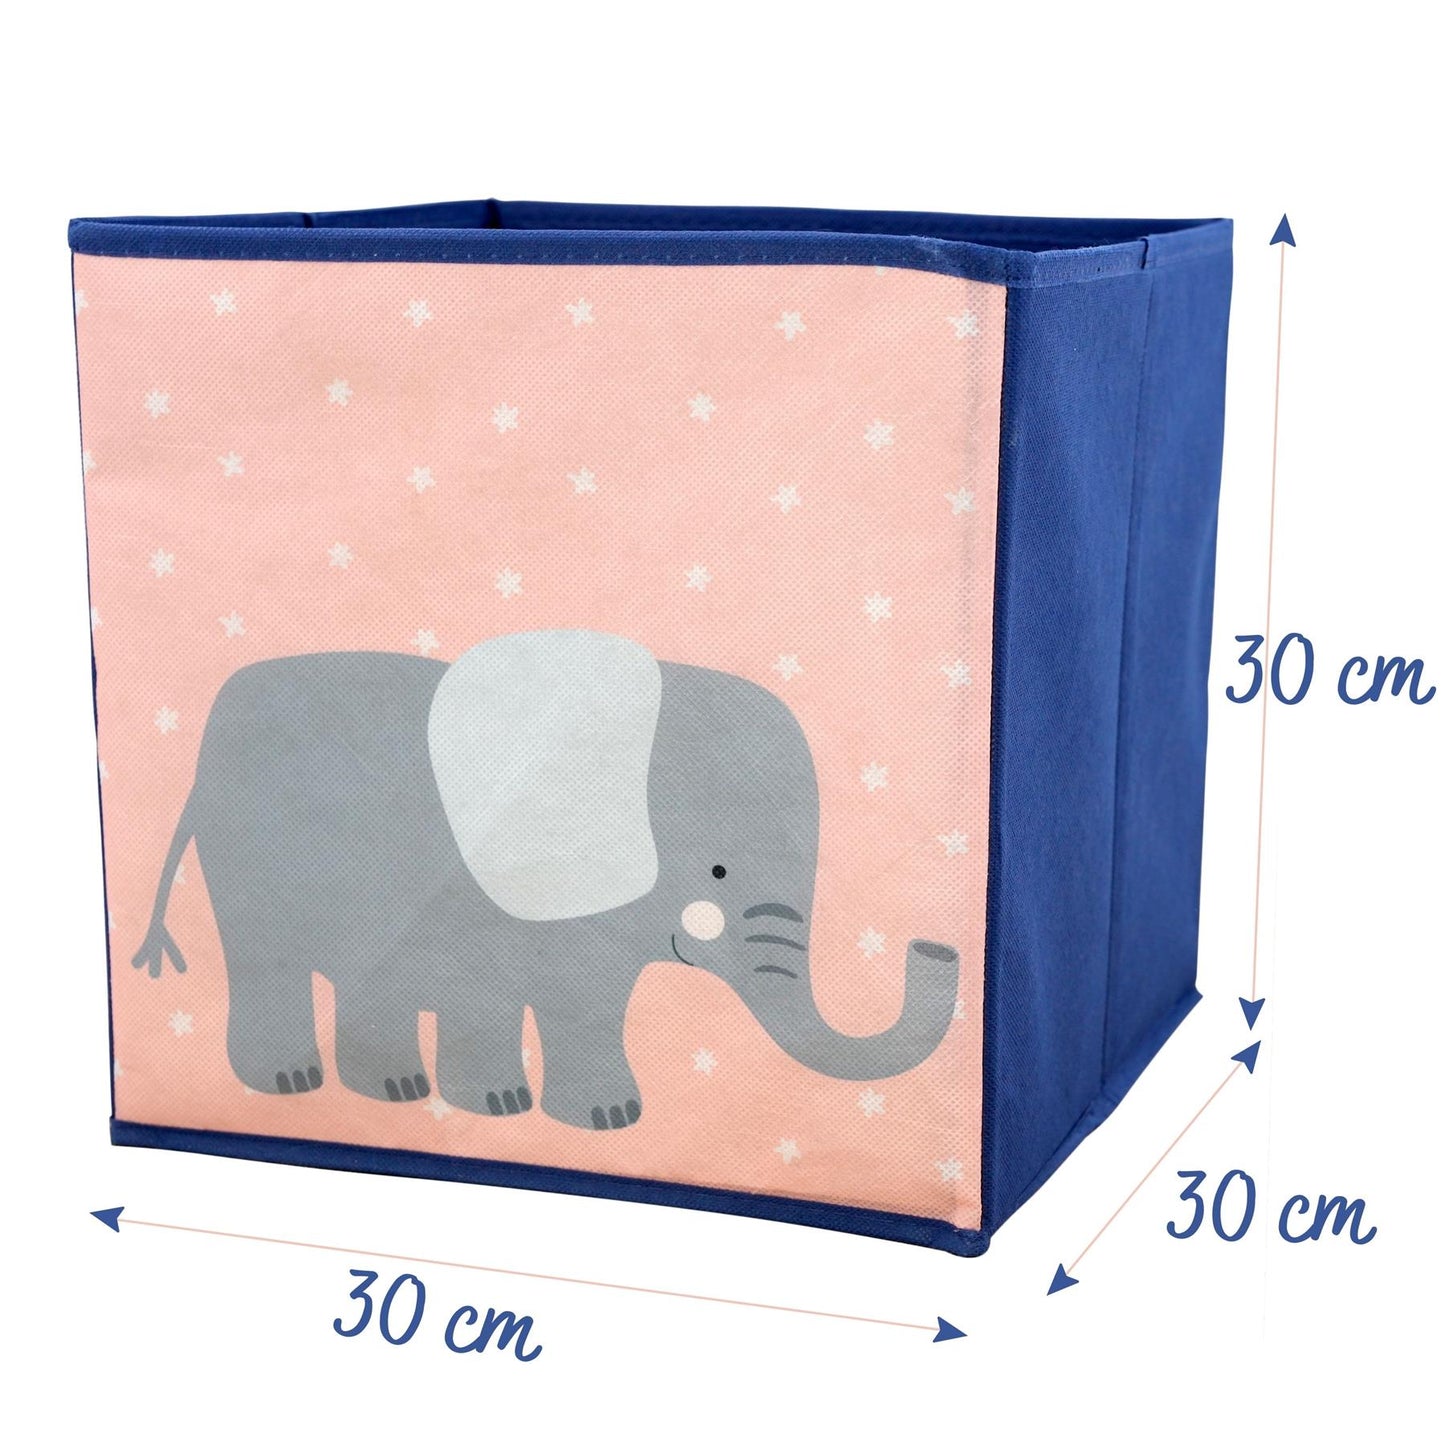 Elephant Design Foldable Storage Box by The Magic Toy Shop - UKBuyZone